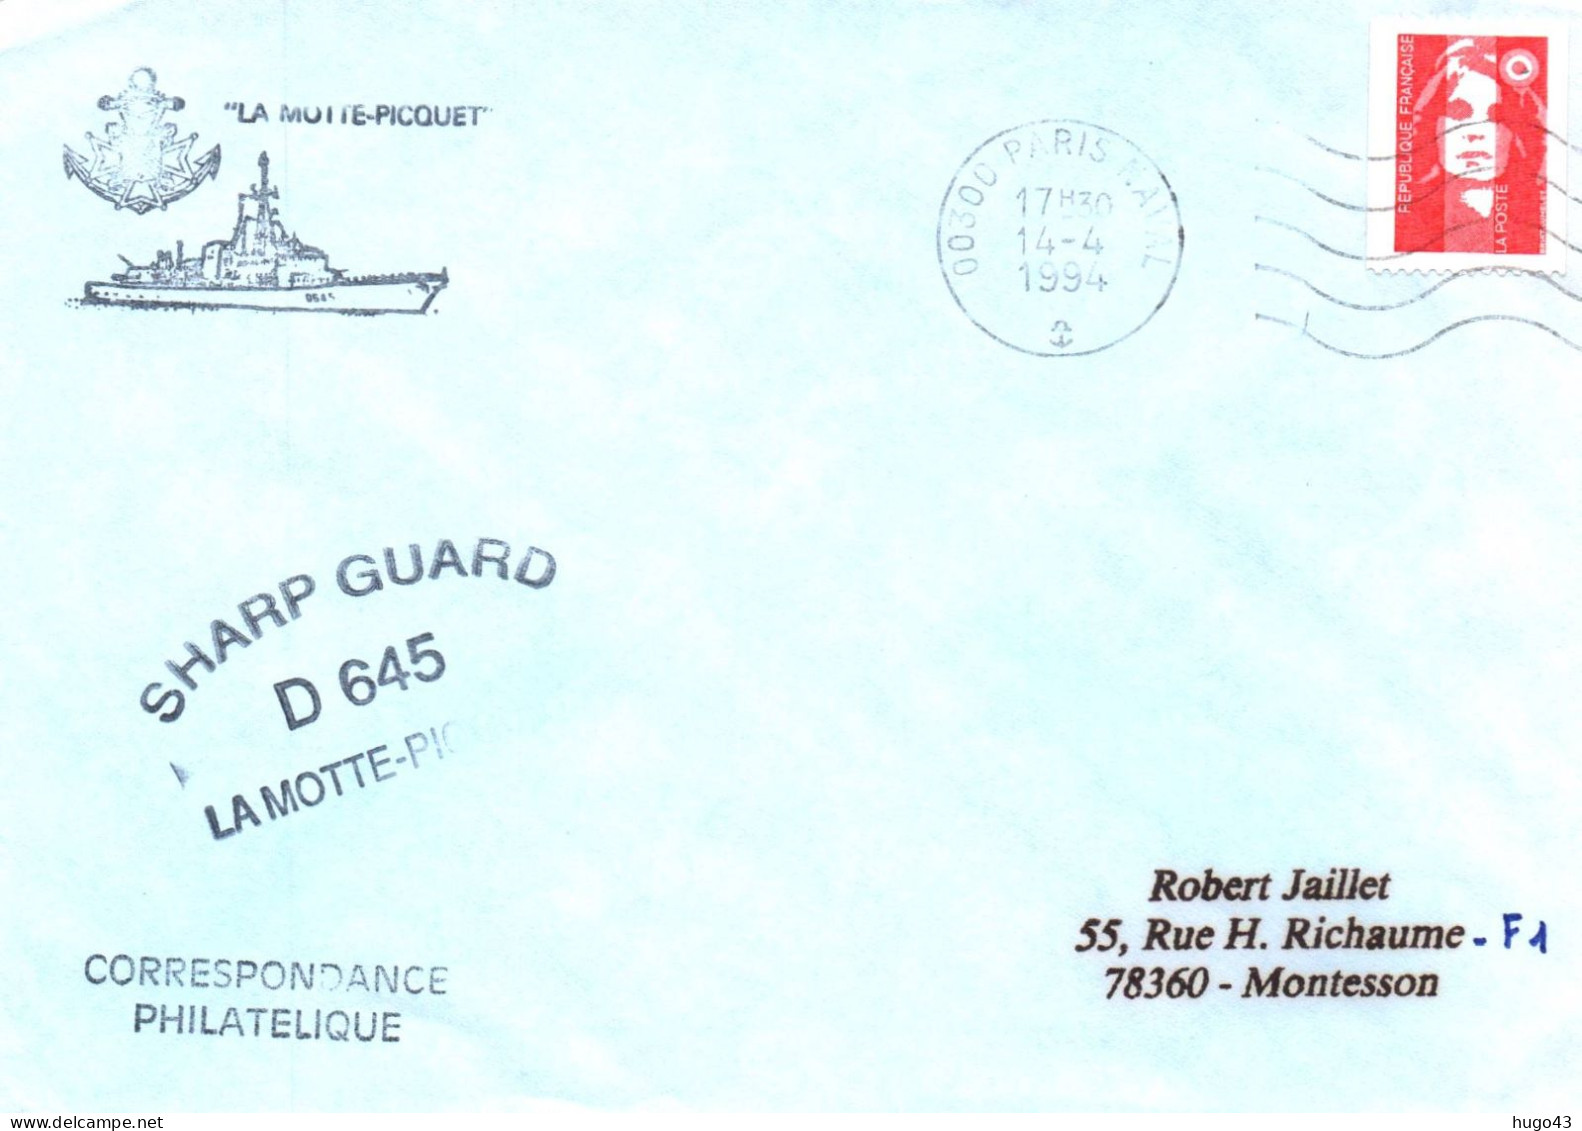 ENVELOPPE AVEC CACHET FREGATE FASM LA MOTTE PICQUET - SHARP GUARD D 645 - PARIS NAVAL LE 14/04/1994 - Correo Naval